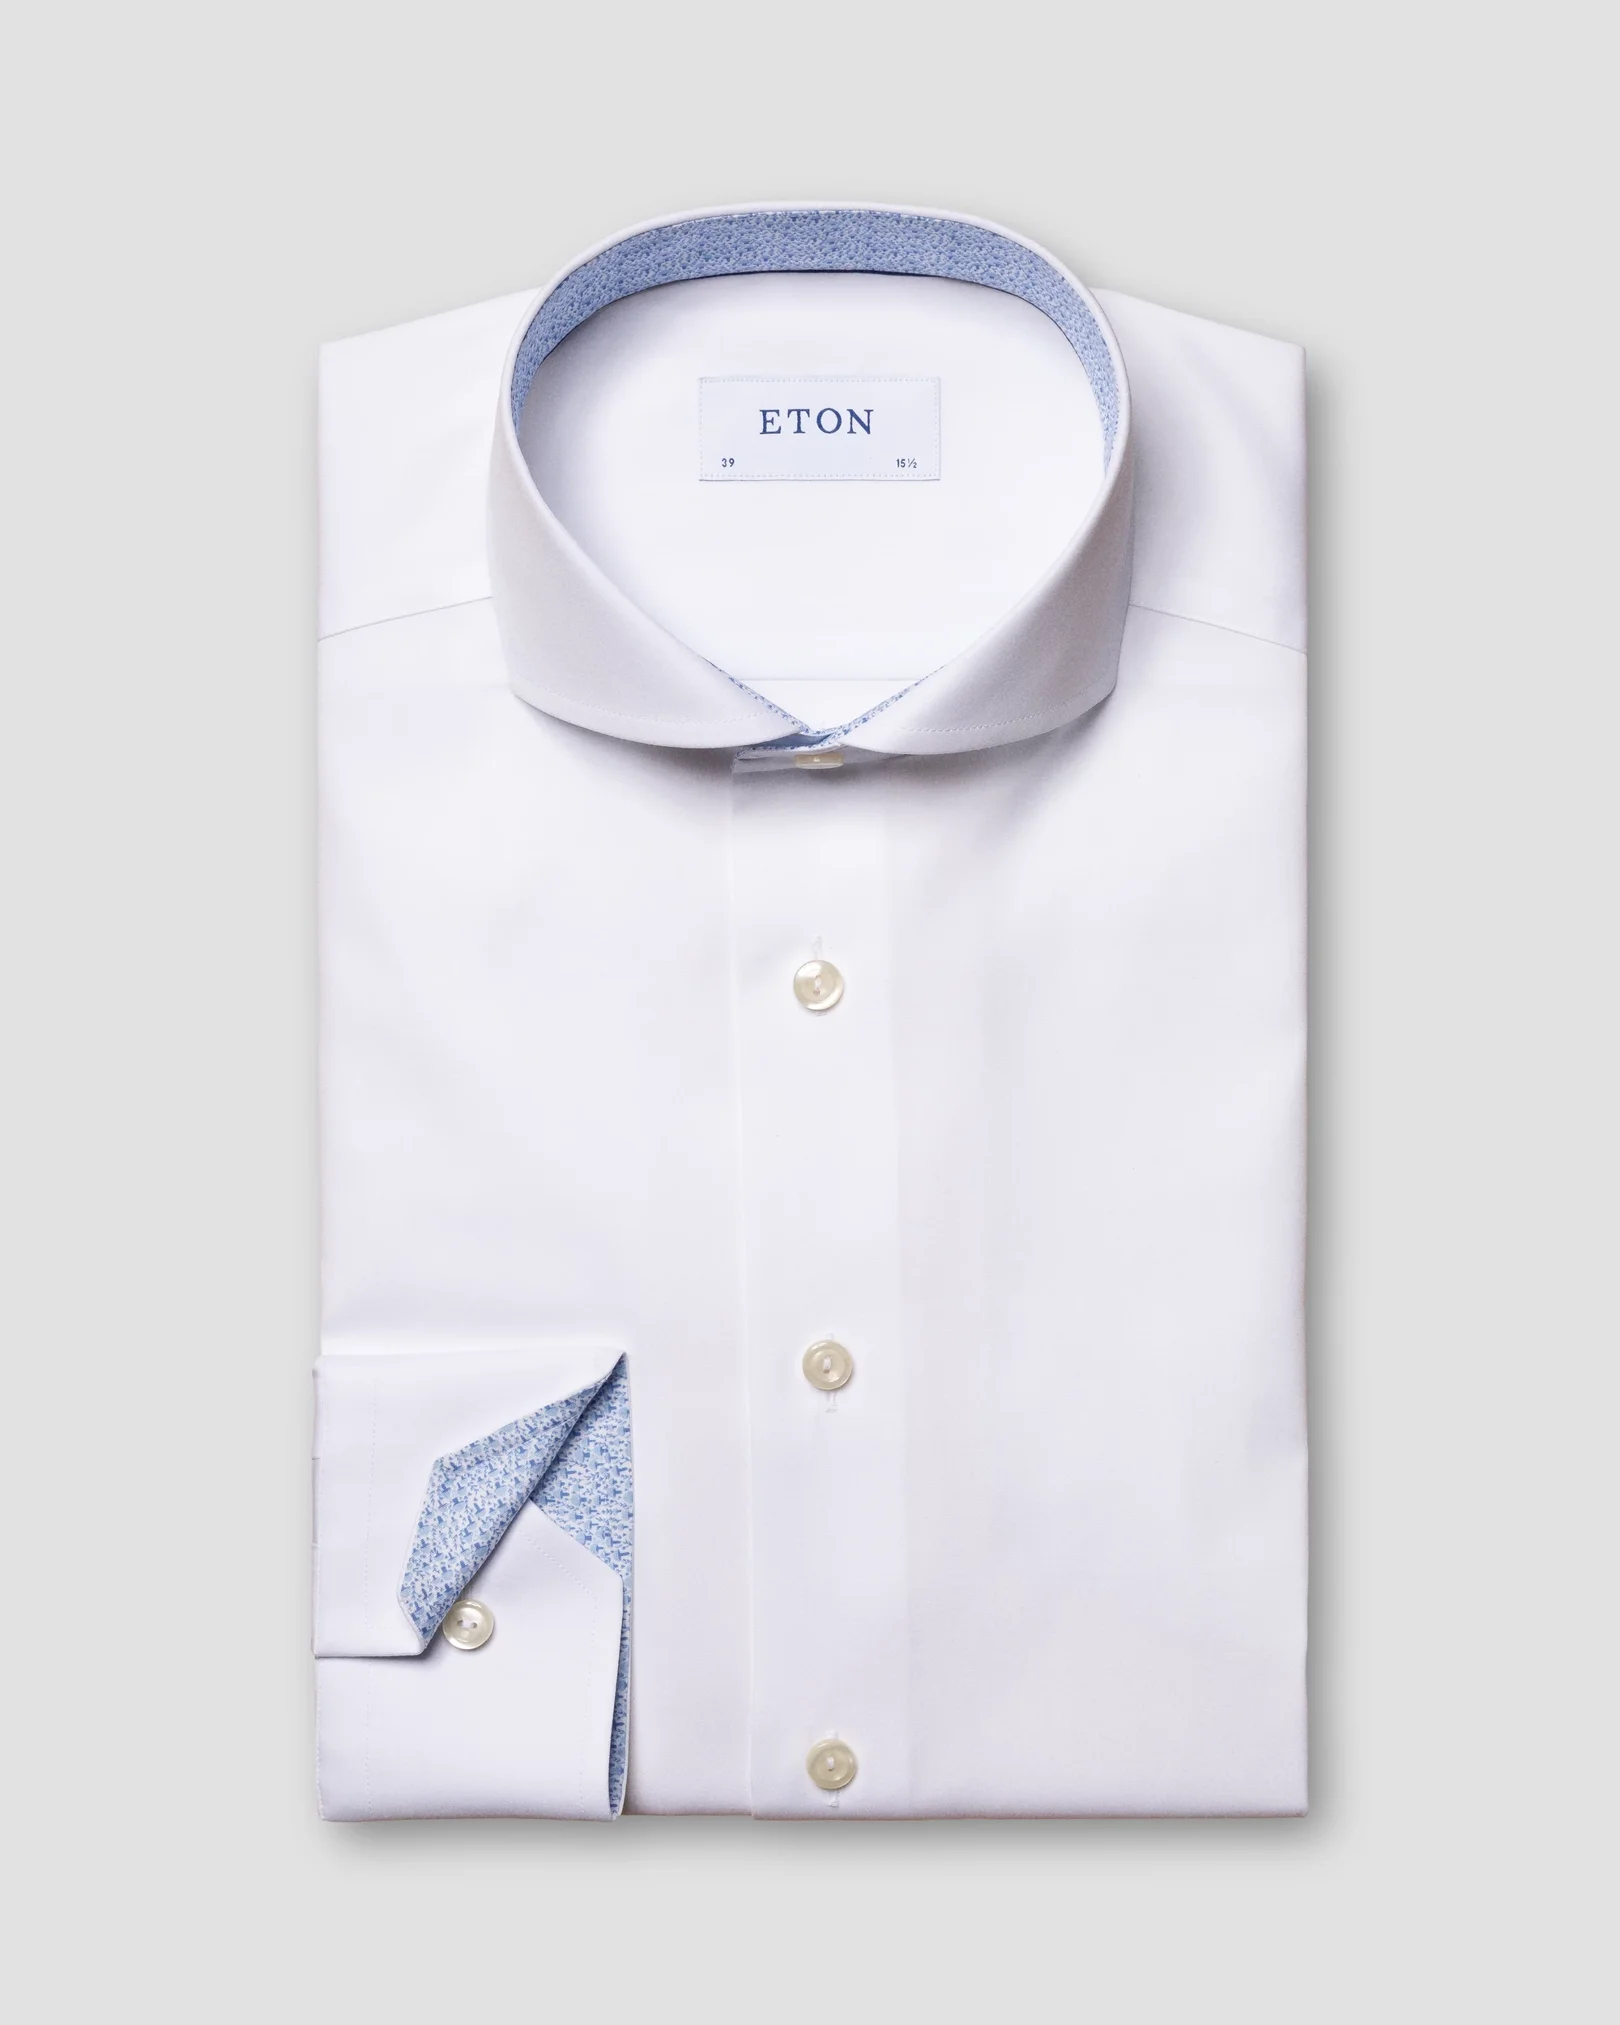 Eton - white poplin shirt mushroom print details